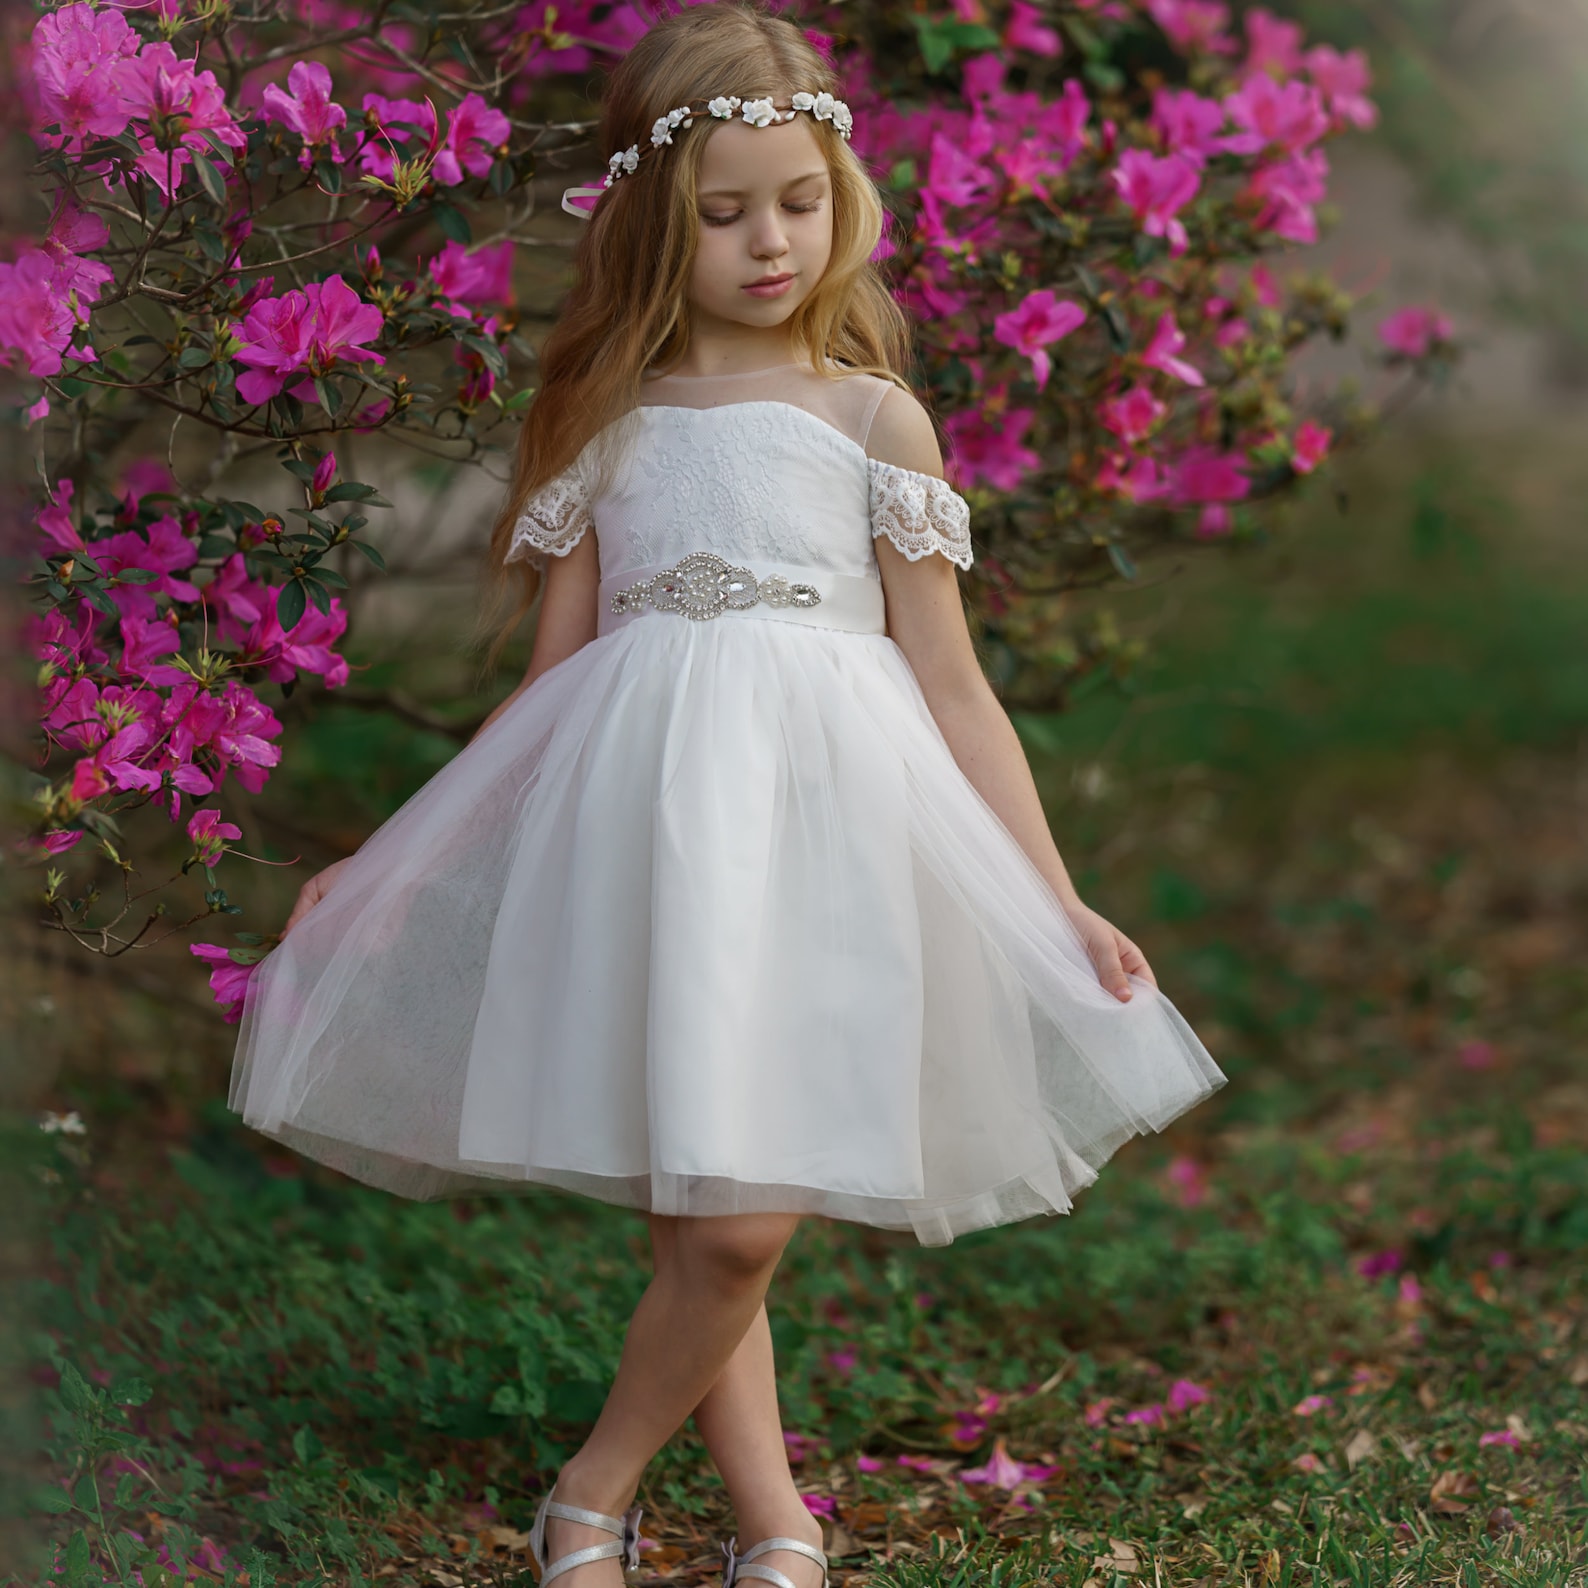 White Lace Flower Girl Dress Tulle Lace Flower Girl Dress | Etsy